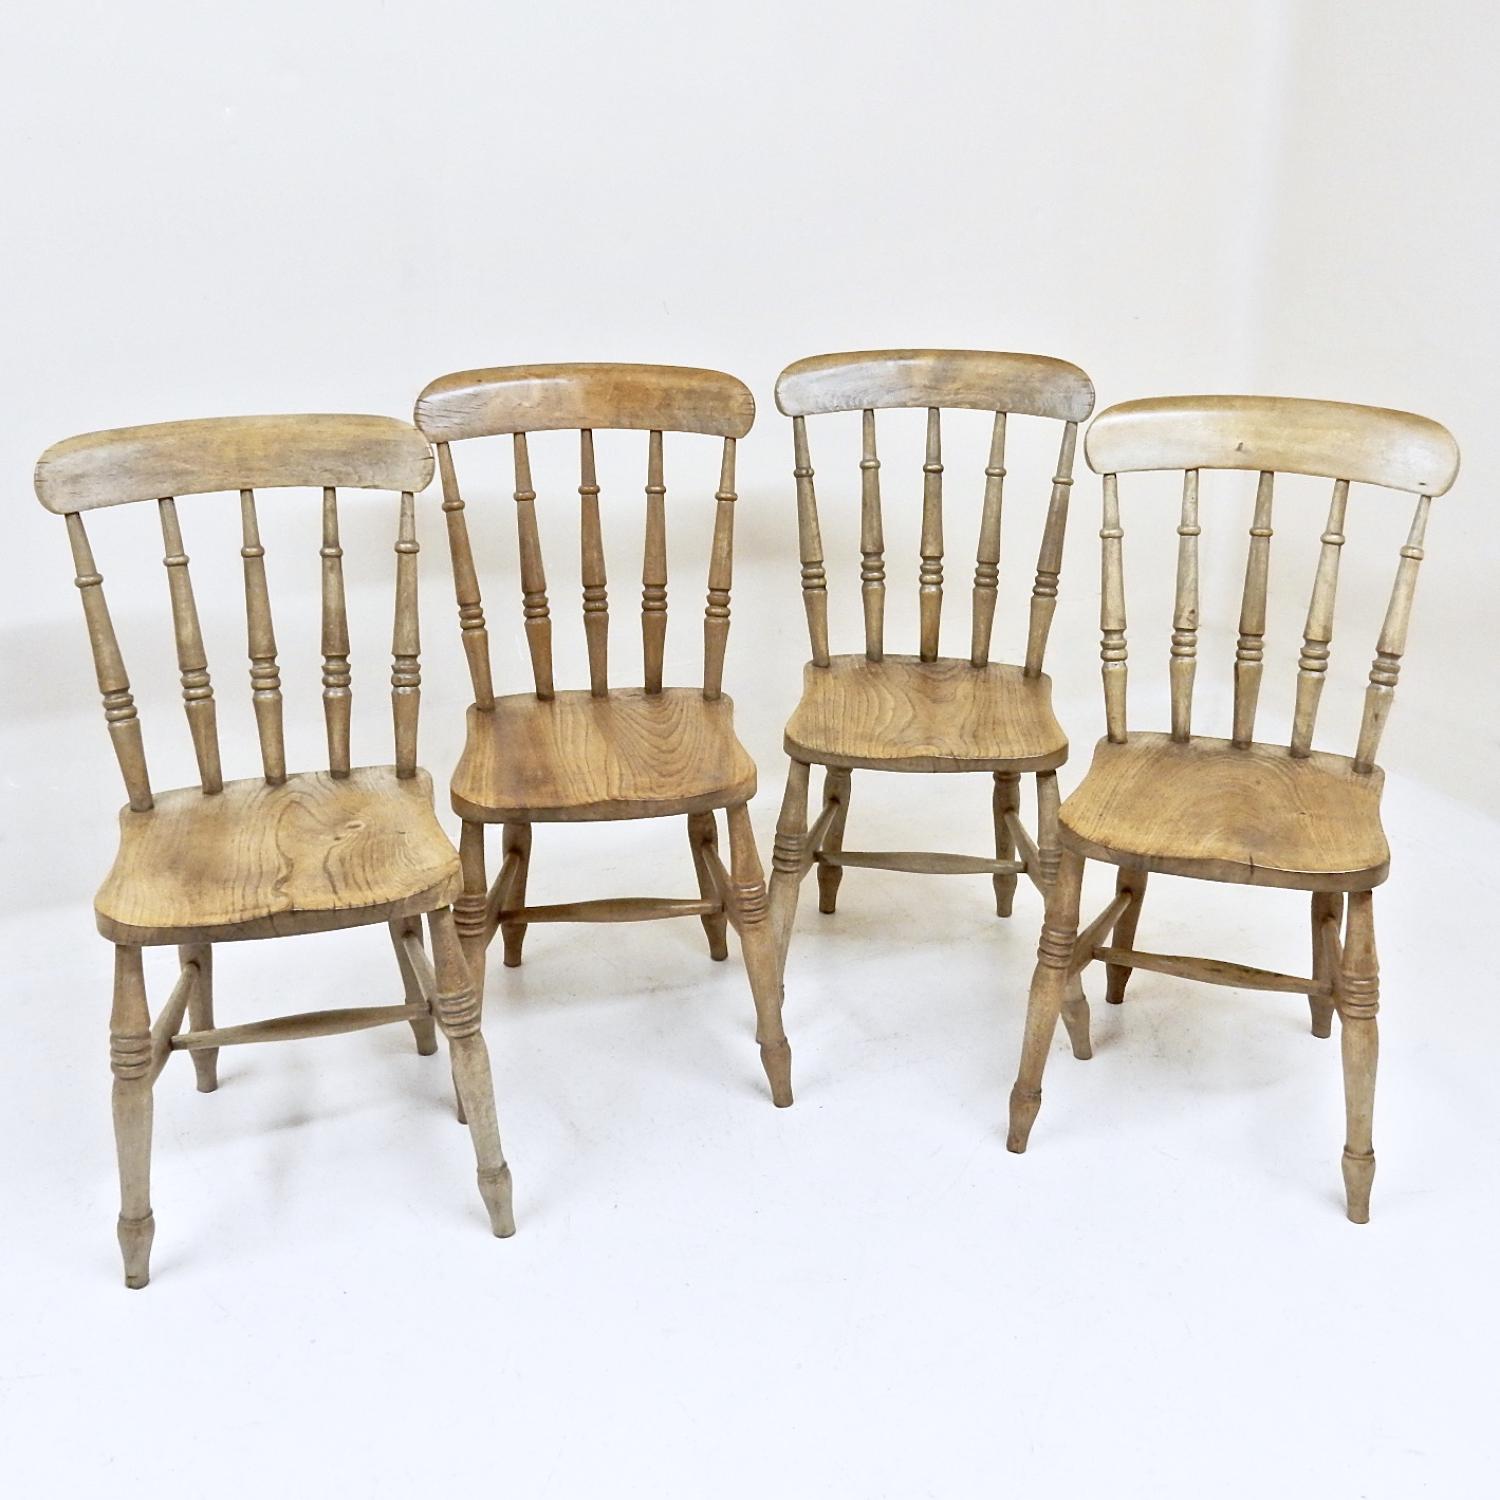 Antique Kitchen Chairs